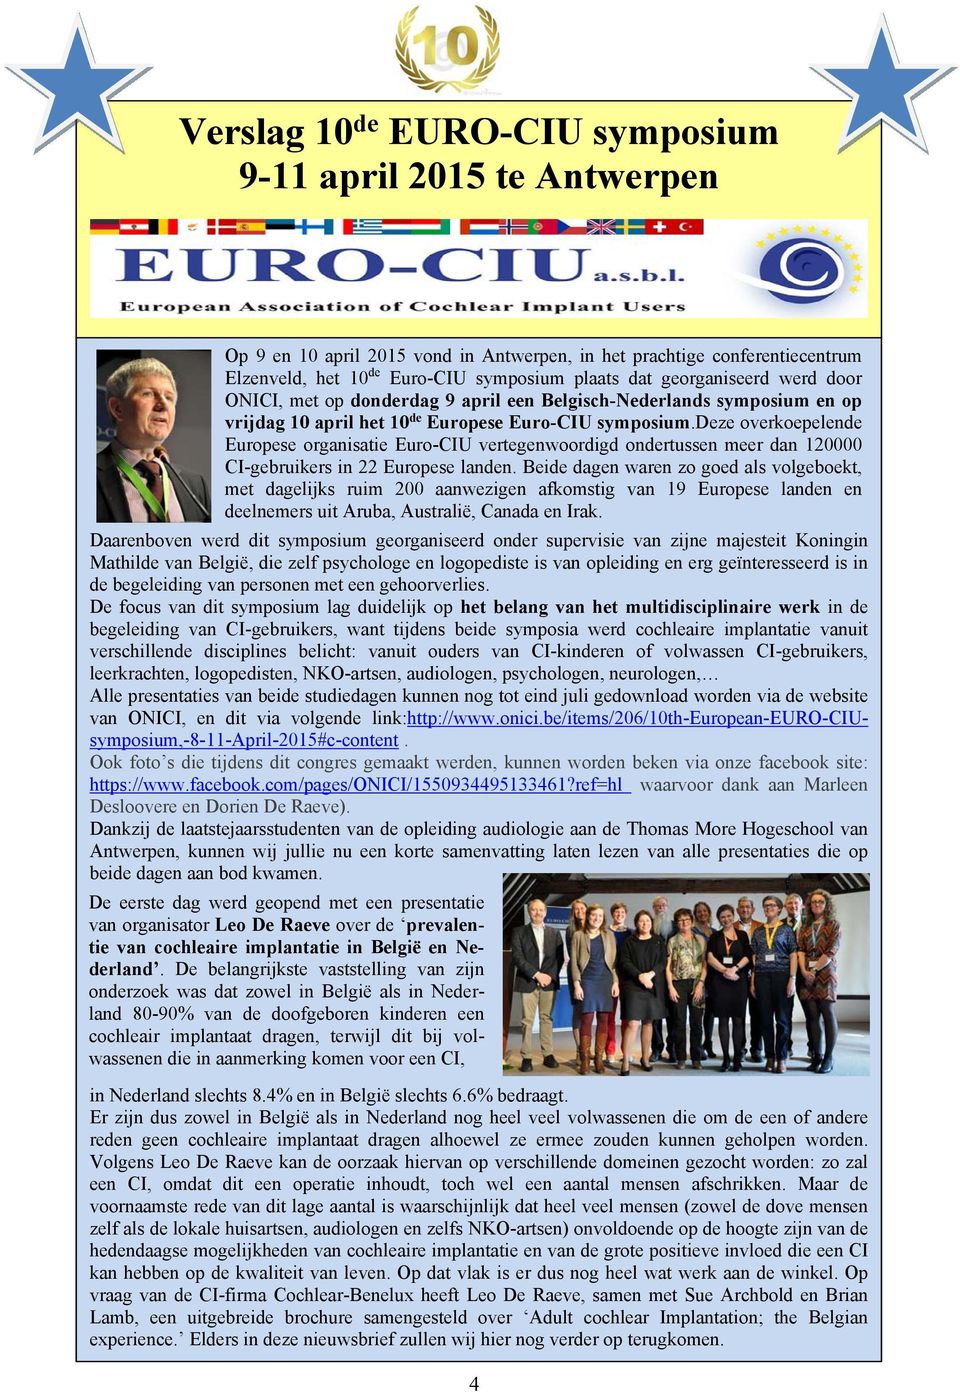 deze overkoepelende Europese organisatie Euro-CIU vertegenwoordigd ondertussen meer dan 120000 CI-gebruikers in 22 Europese landen.